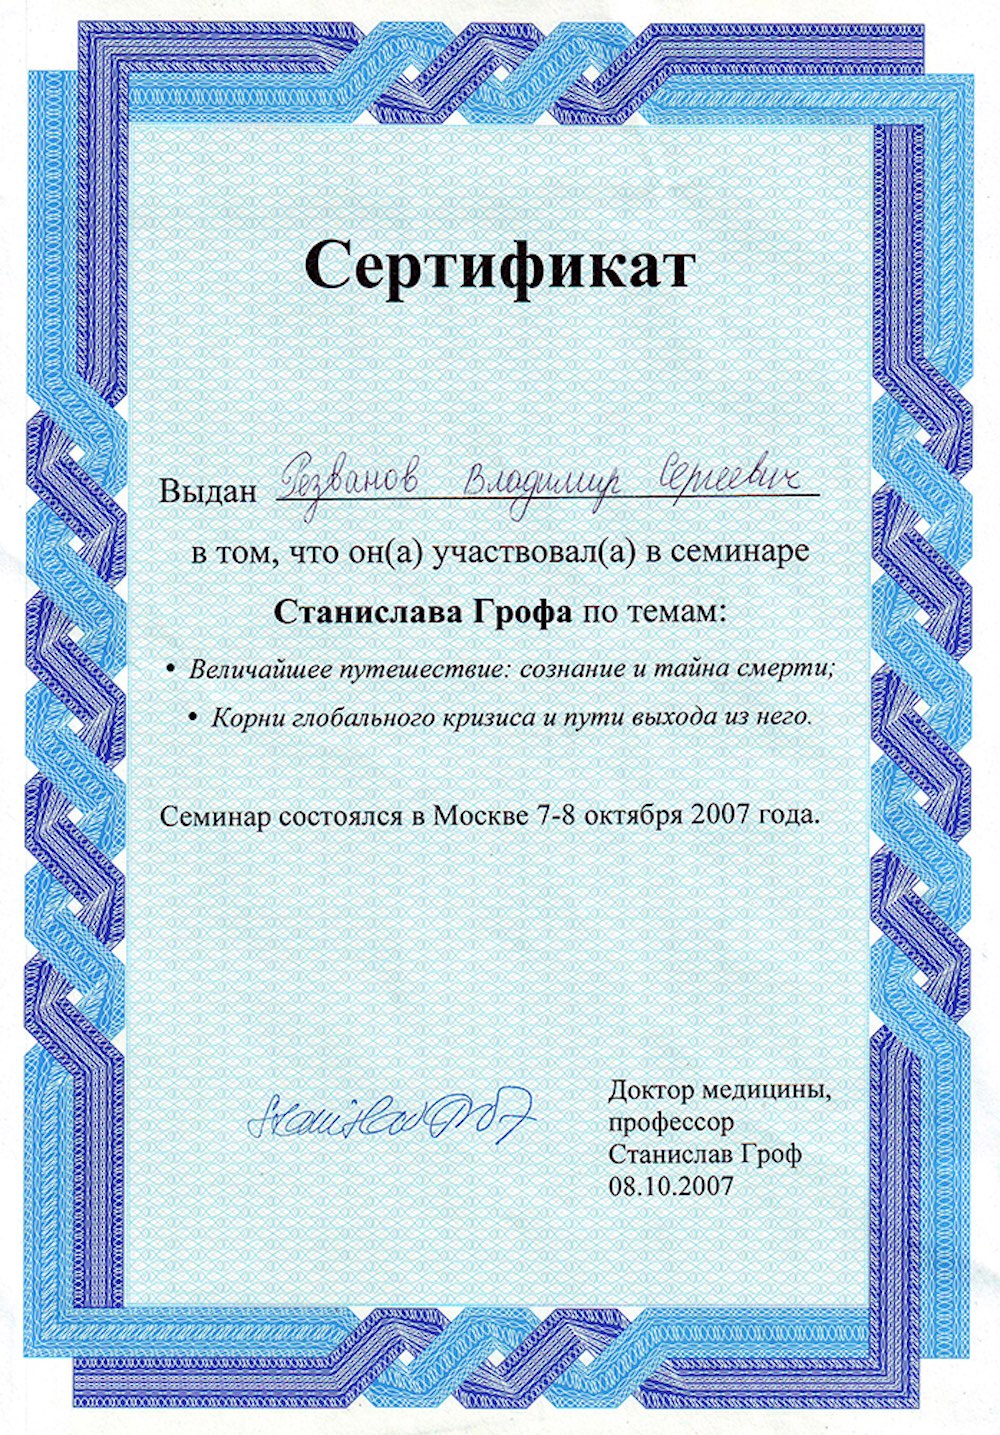 Сертификат участника семинара Станислава Грофа